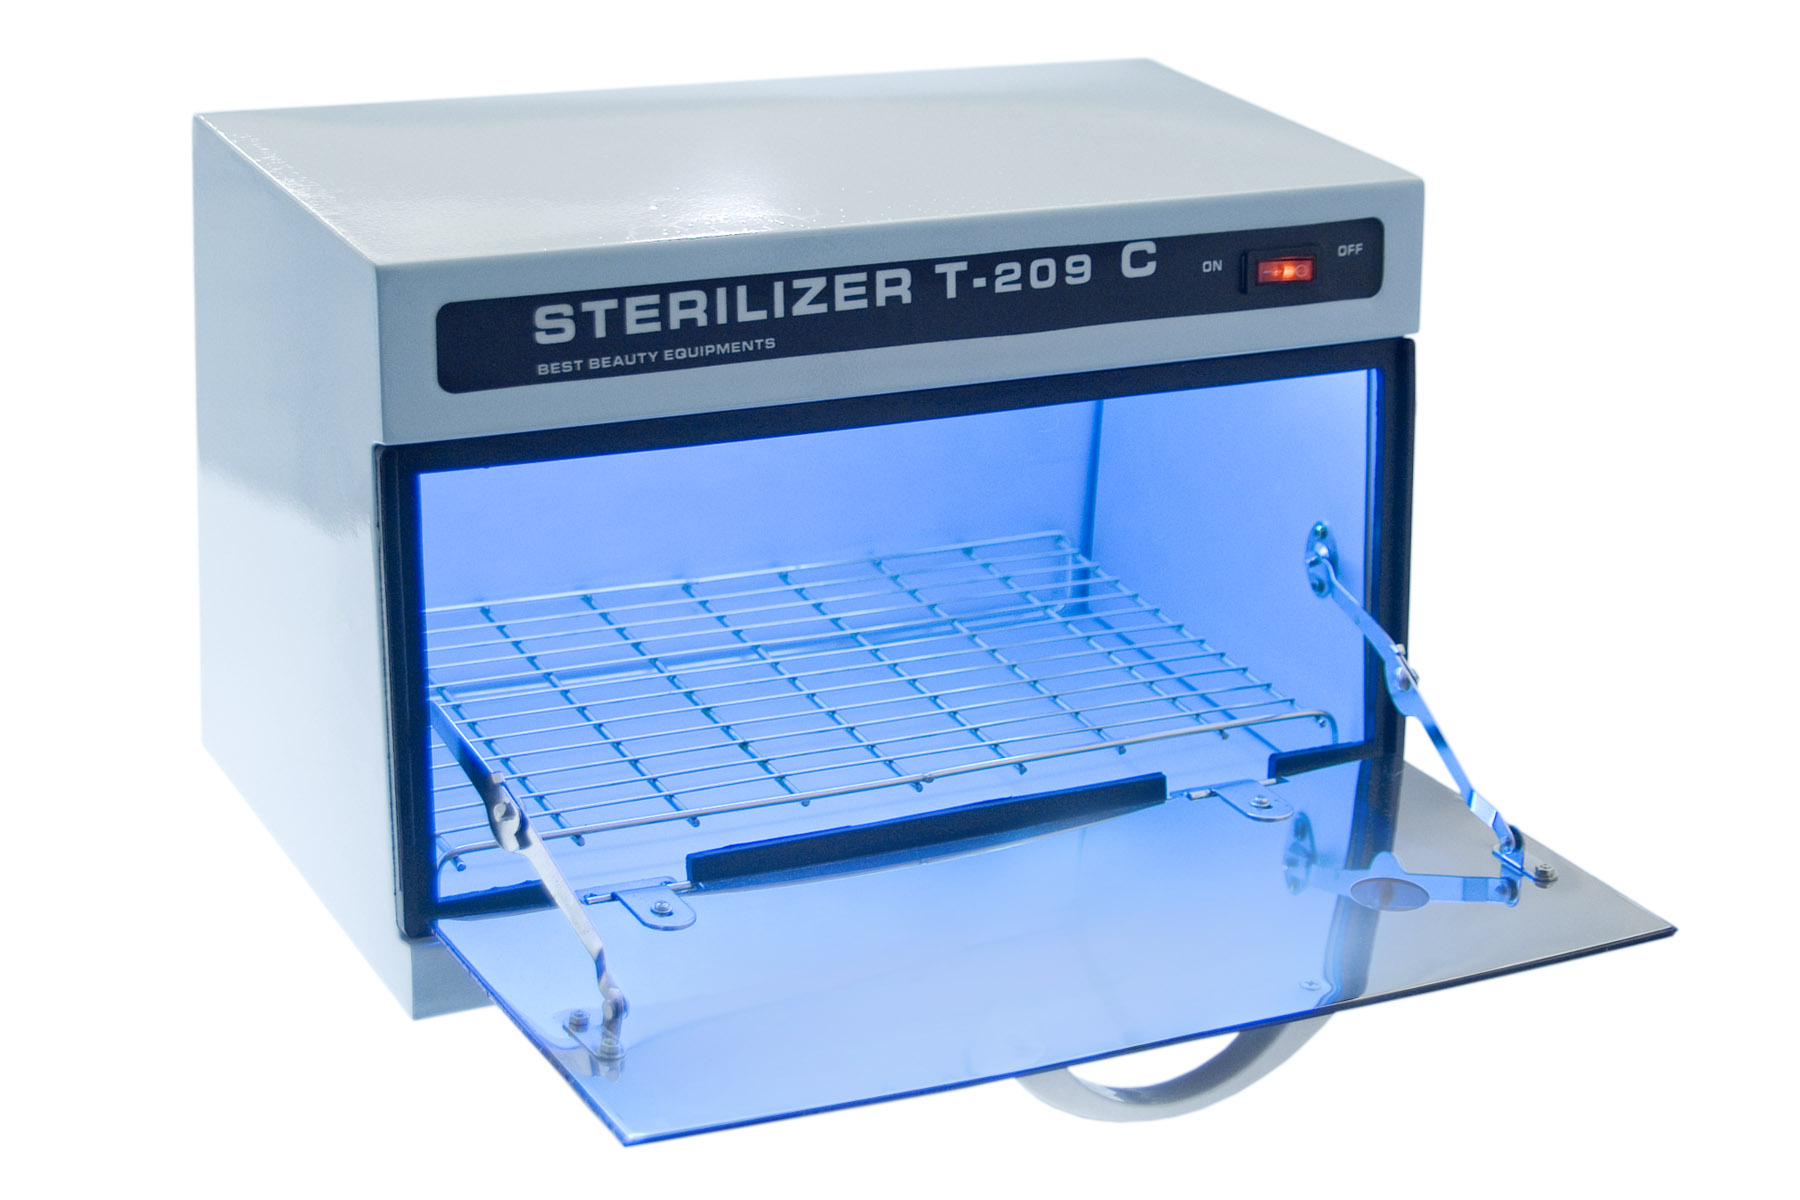 Стерилизатор с 1. UV Sterilizer для инструментов. УФ стерилизатор Sterilizer. Стерилизатор конвейерный УФ-1100. Sterilizer t-209.